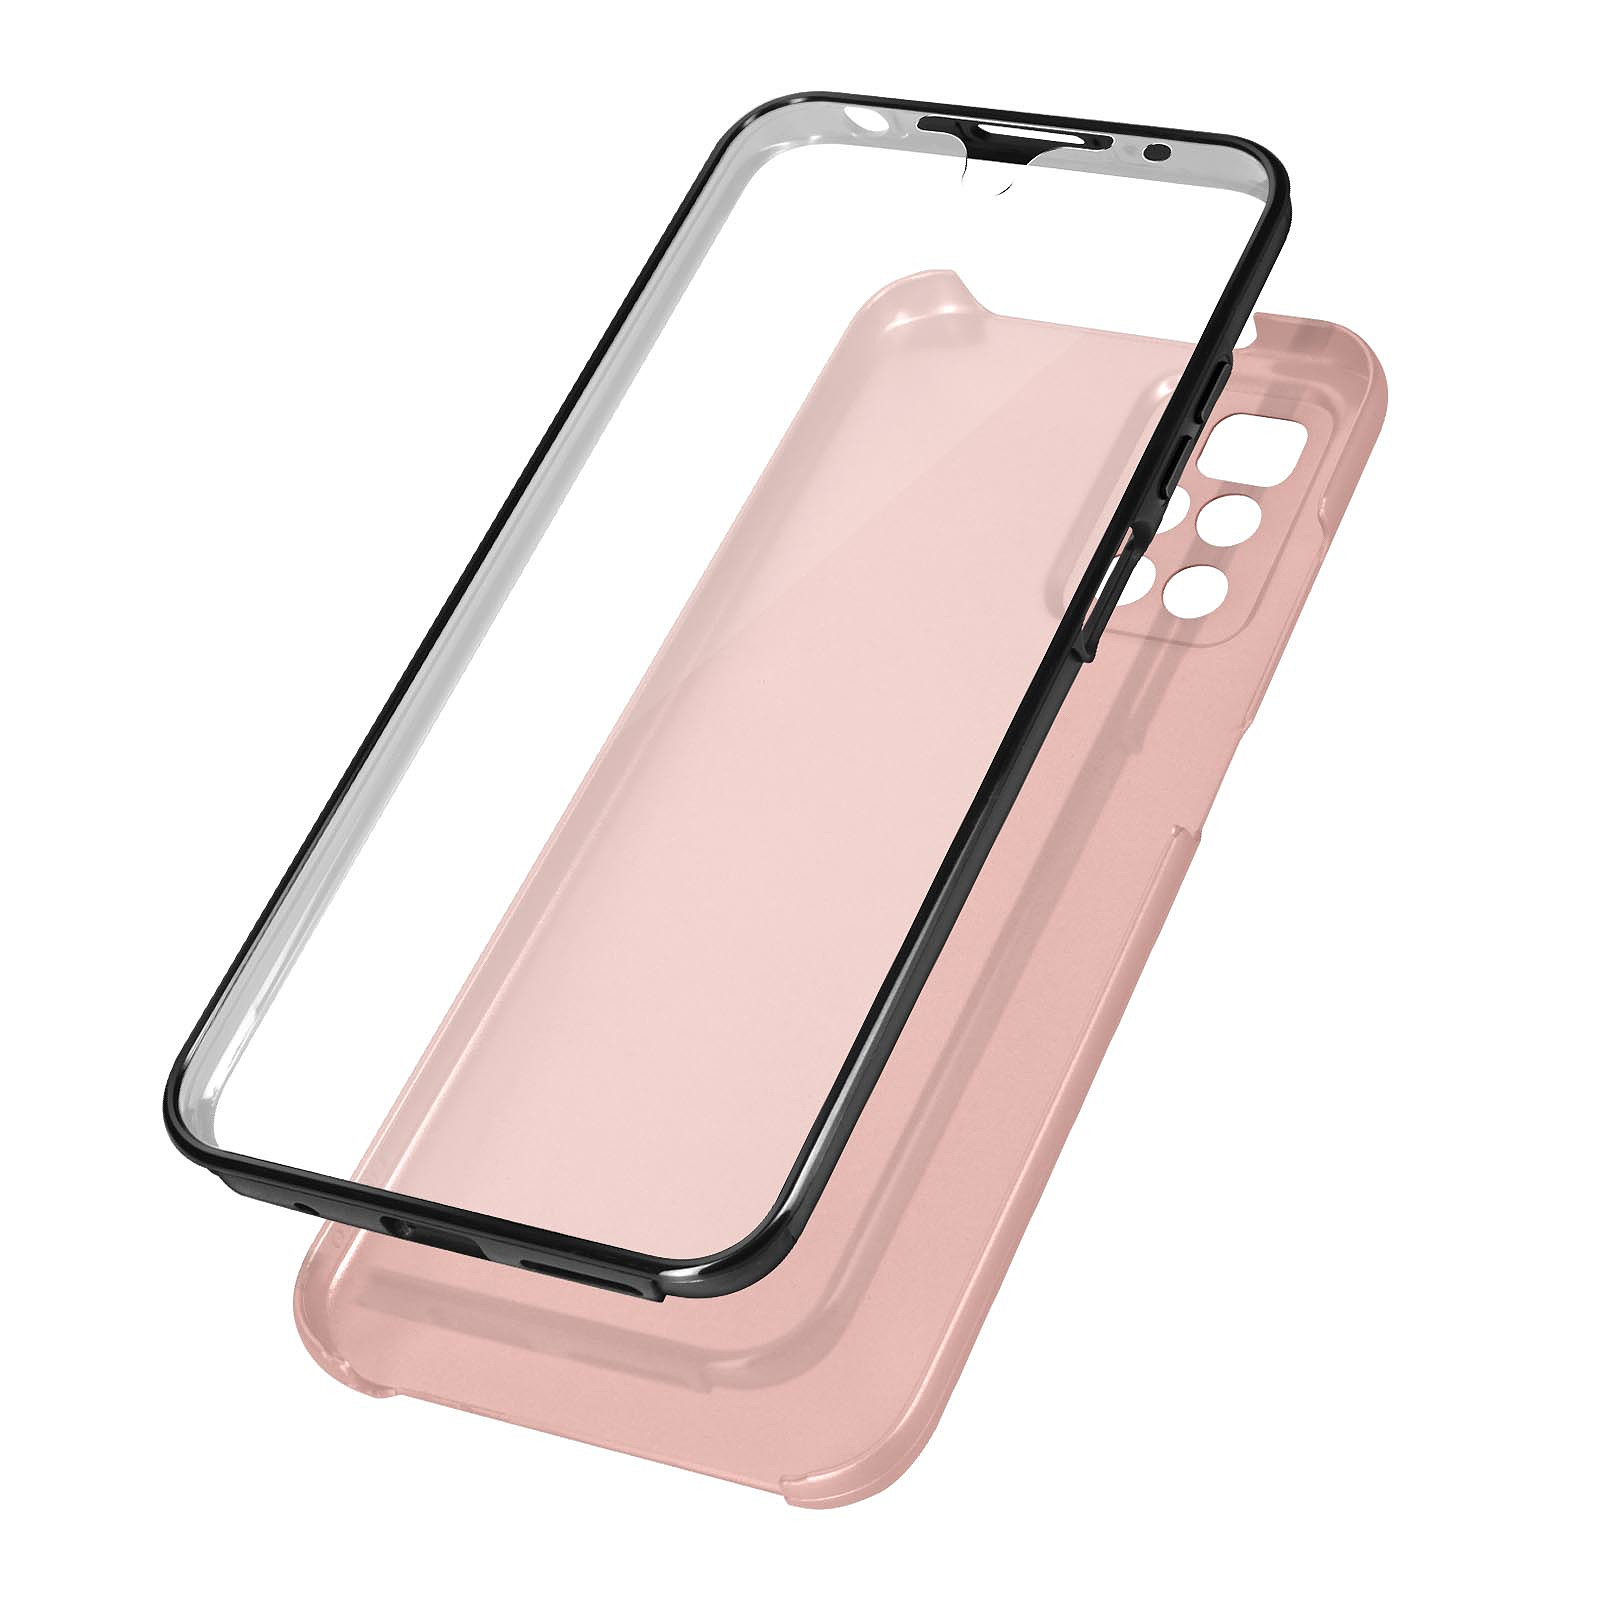 Avizar Coque pour Xiaomi Redmi 10 Intègrale Arrière Rigide Rose gold et Avant Souple Transparent - Coque telephone Avizar